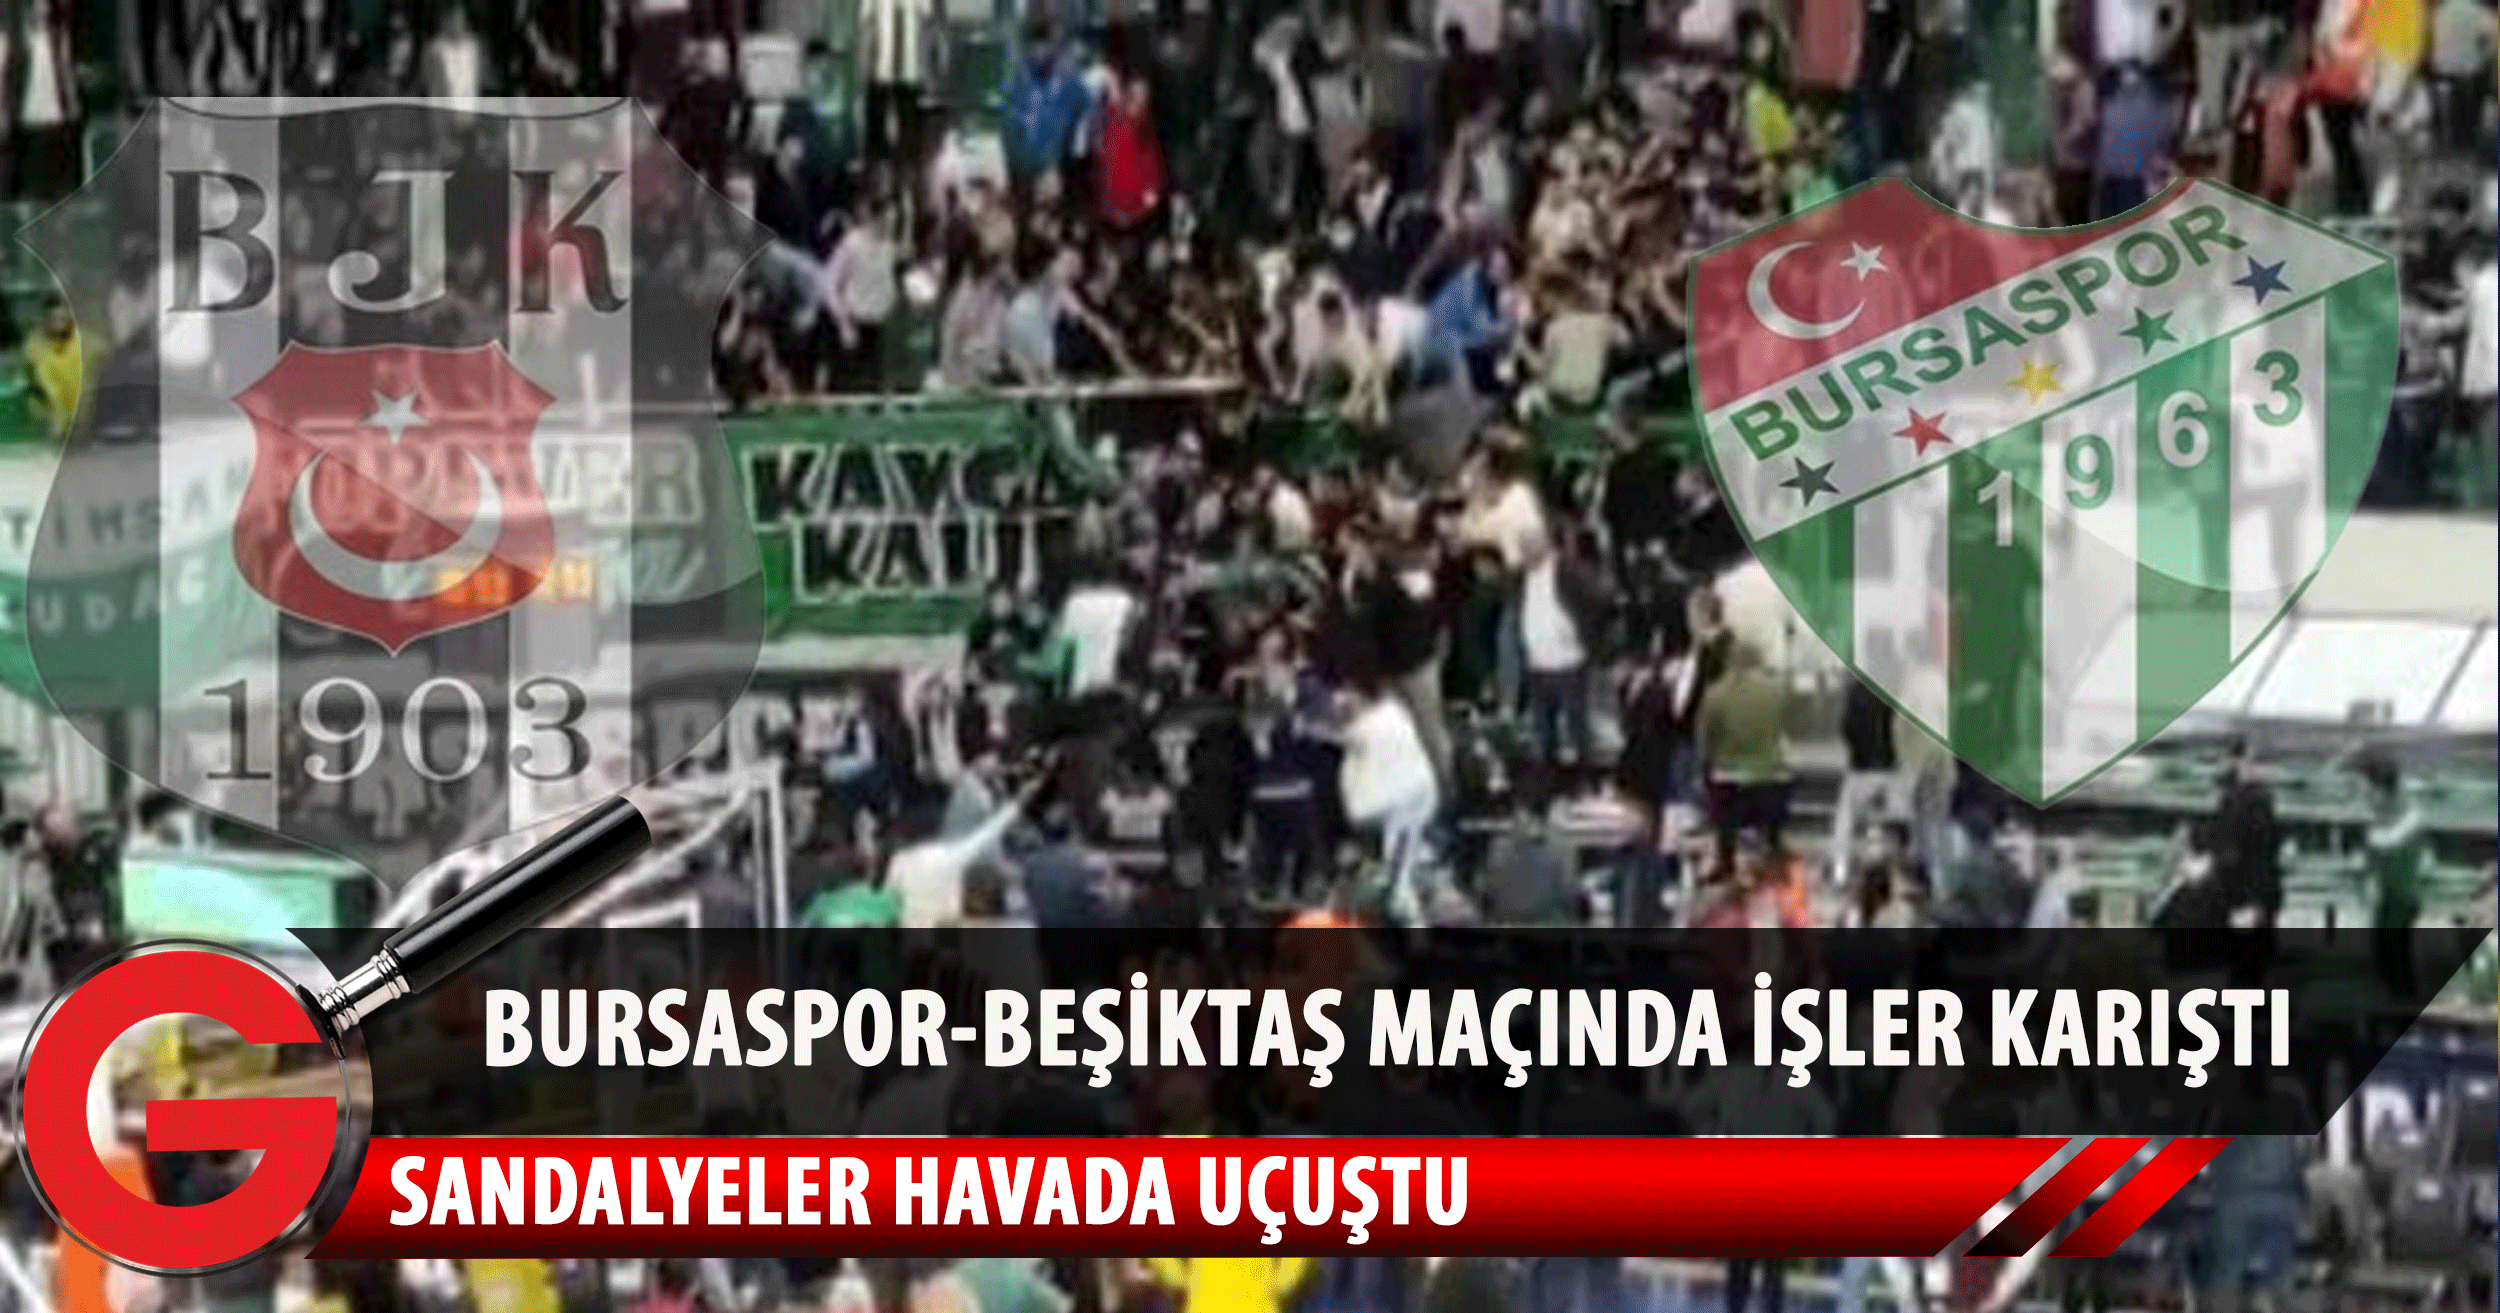 Bursaspor-Beşiktaş maçında ortalık savaş alanına döndü! Polisler devreye girdi